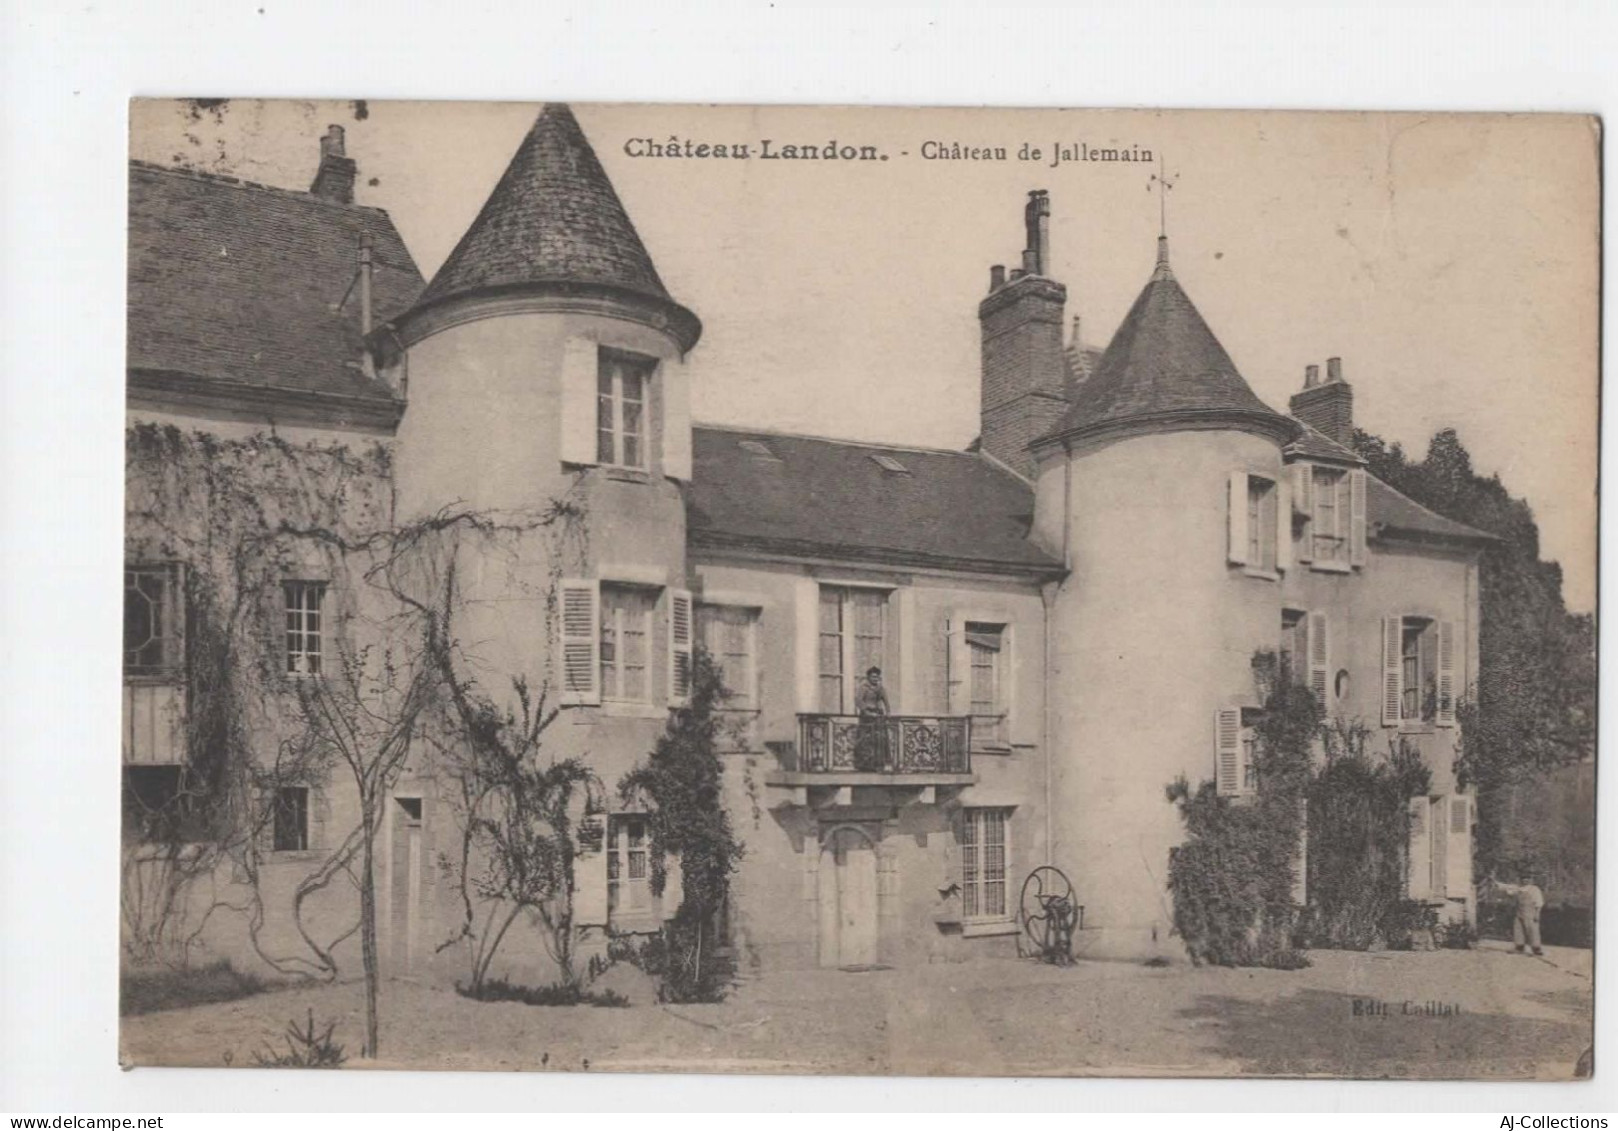 AJC - Chateau Landon - Chateau De Jallemain - Chateau Landon